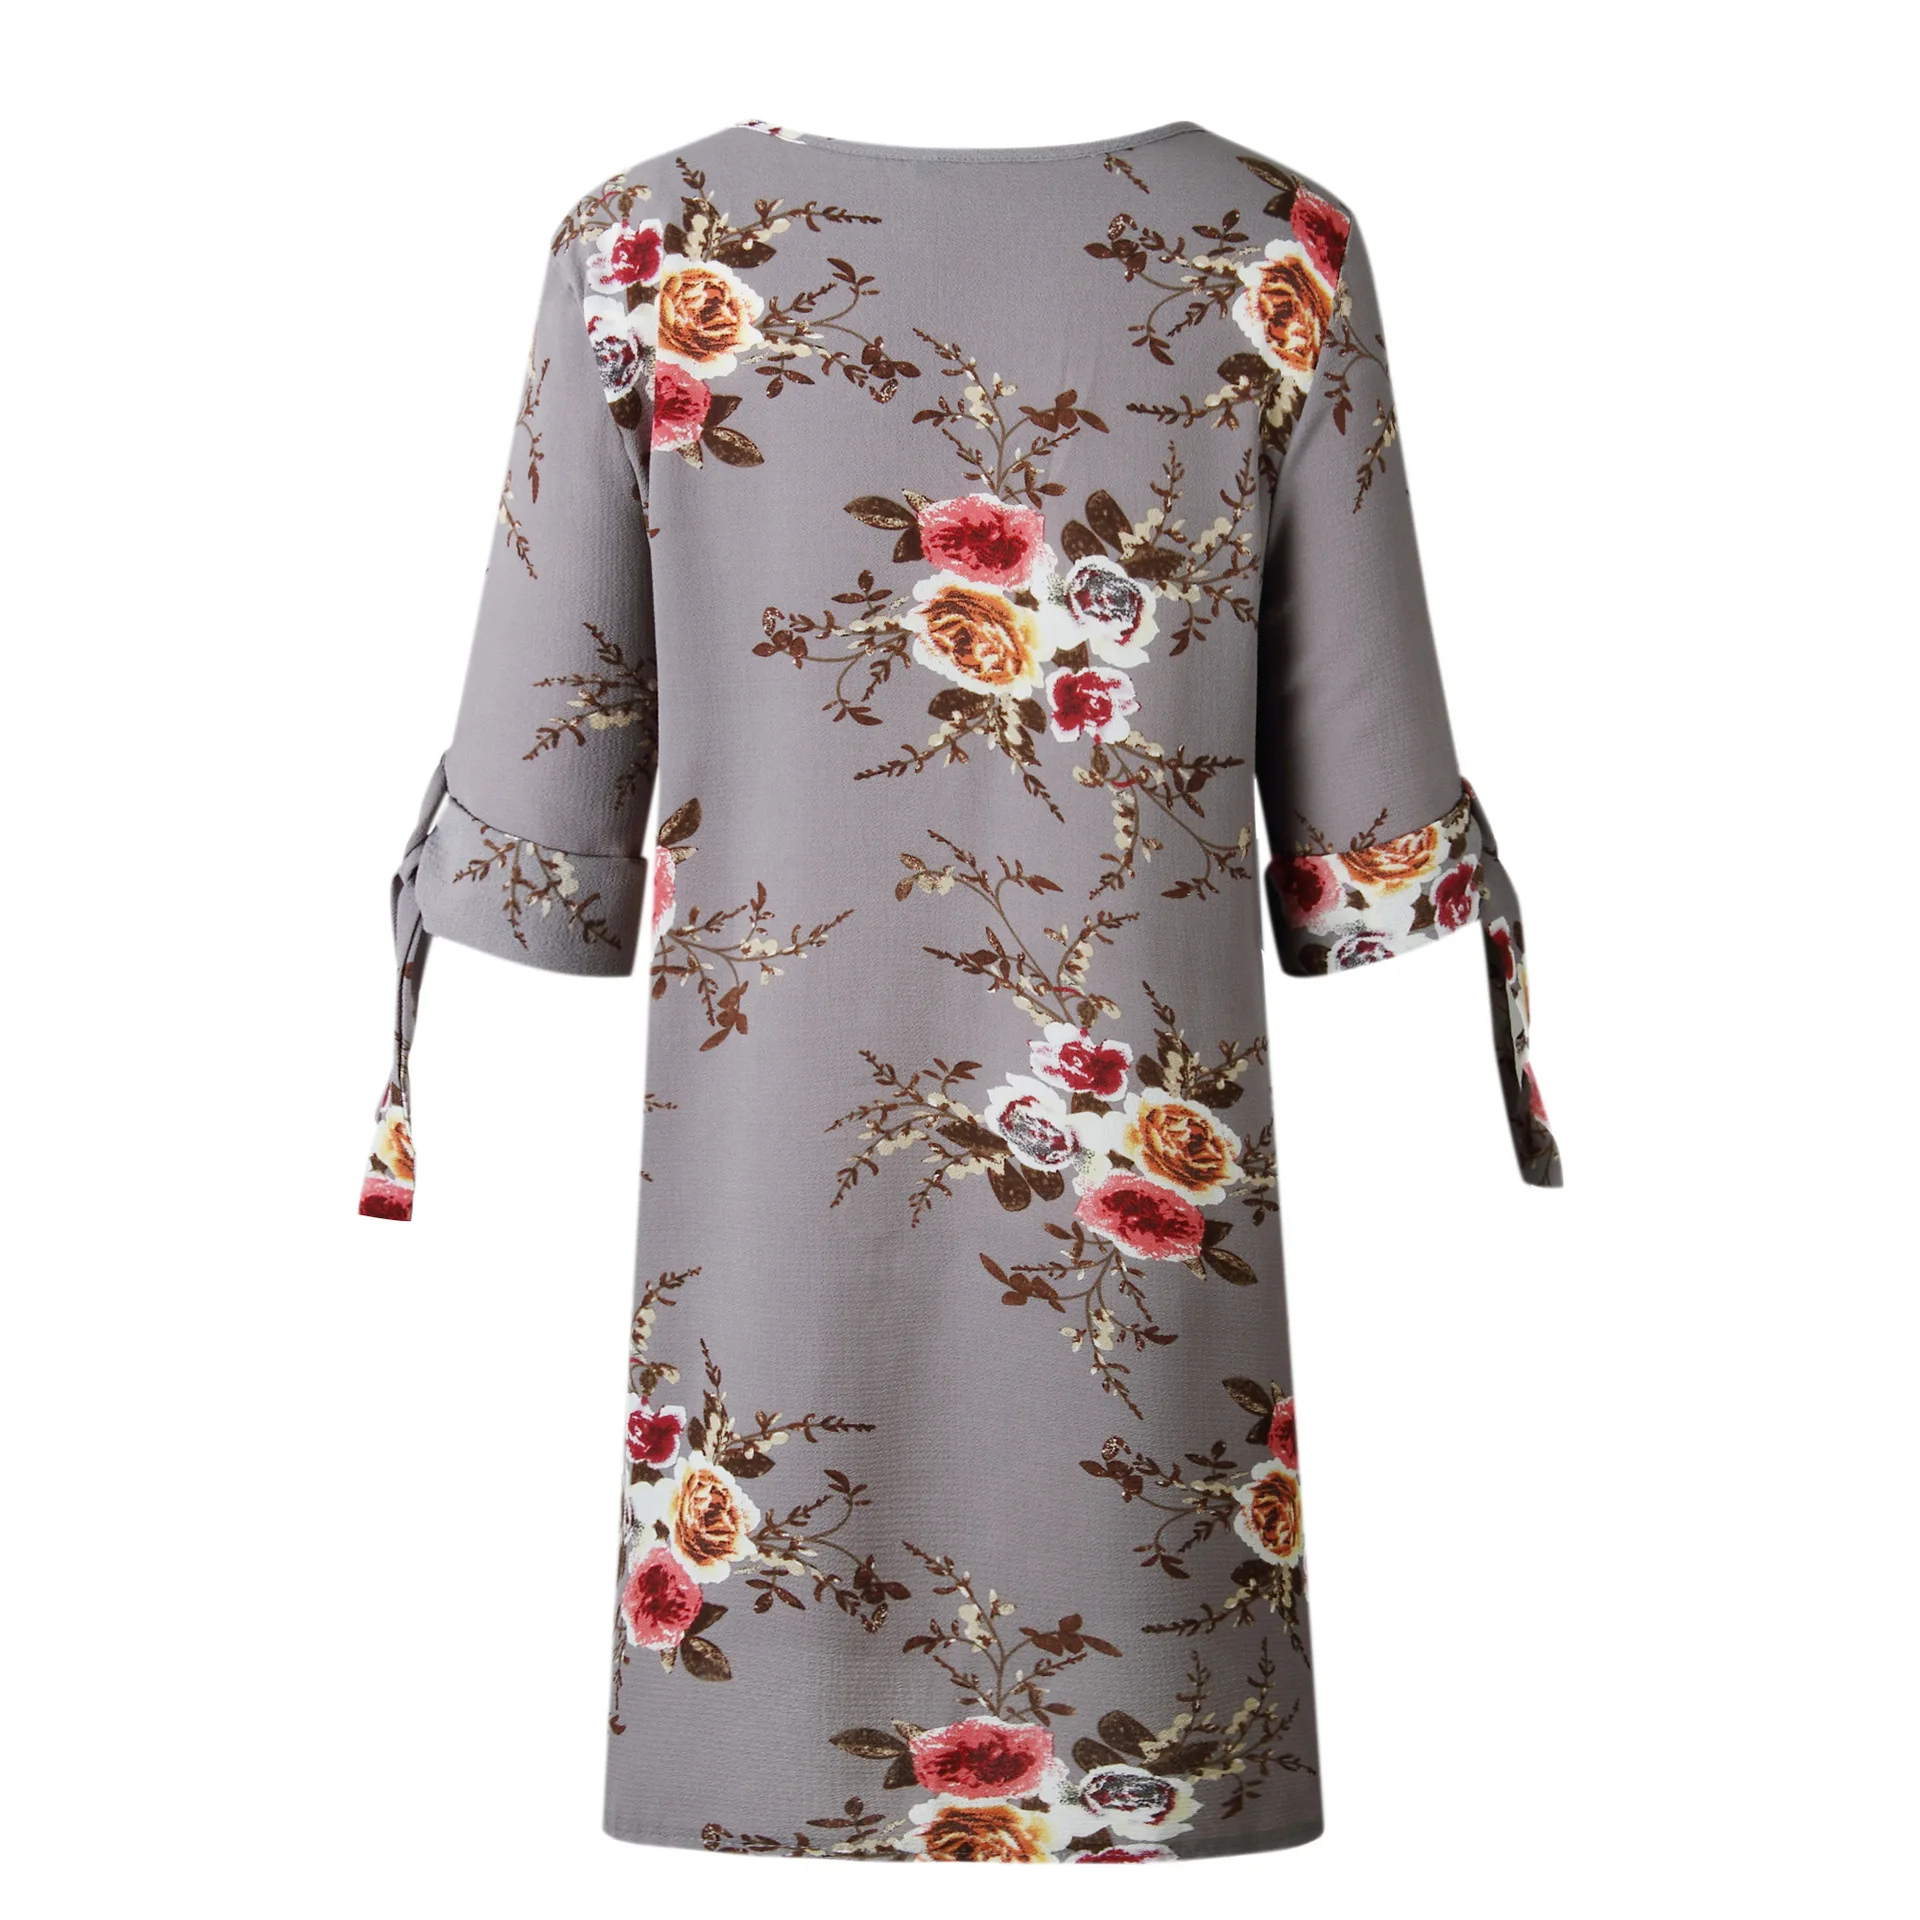 Для женщин летнее платье Boho Стиль Цветочный принт шифоновое пляжное платье Туника Сарафан Свободные мини платье S-5XL